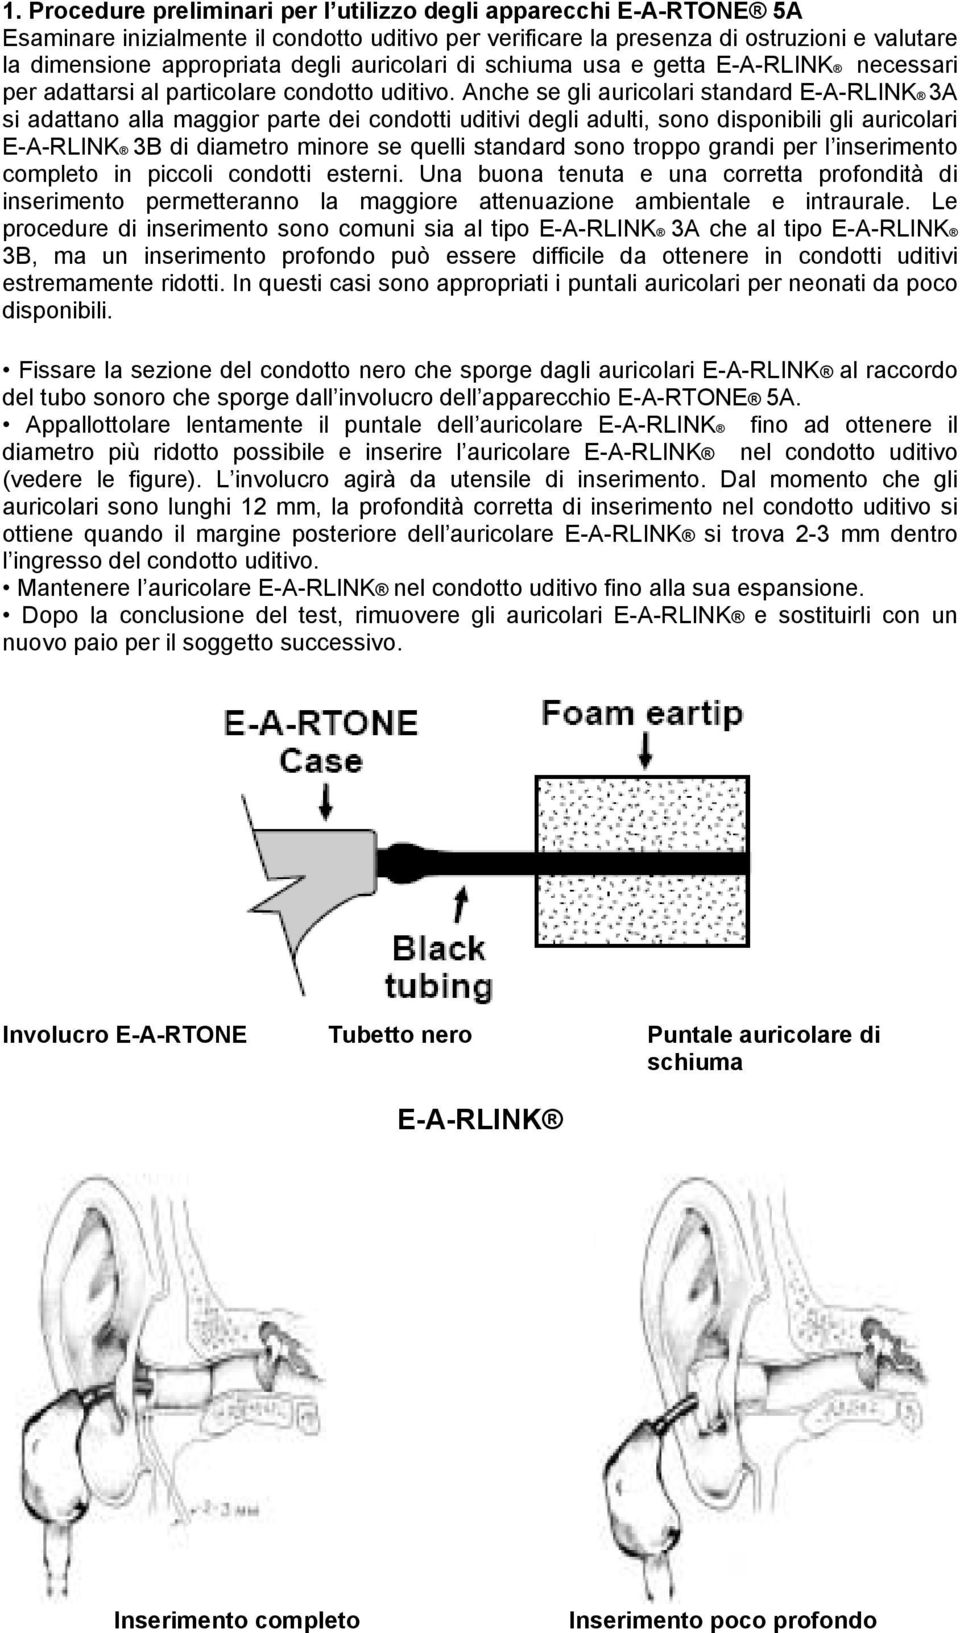 Anche se gli auricolari standard E-A-RLINK 3A si adattano alla maggior parte dei condotti uditivi degli adulti, sono disponibili gli auricolari E-A-RLINK 3B di diametro minore se quelli standard sono